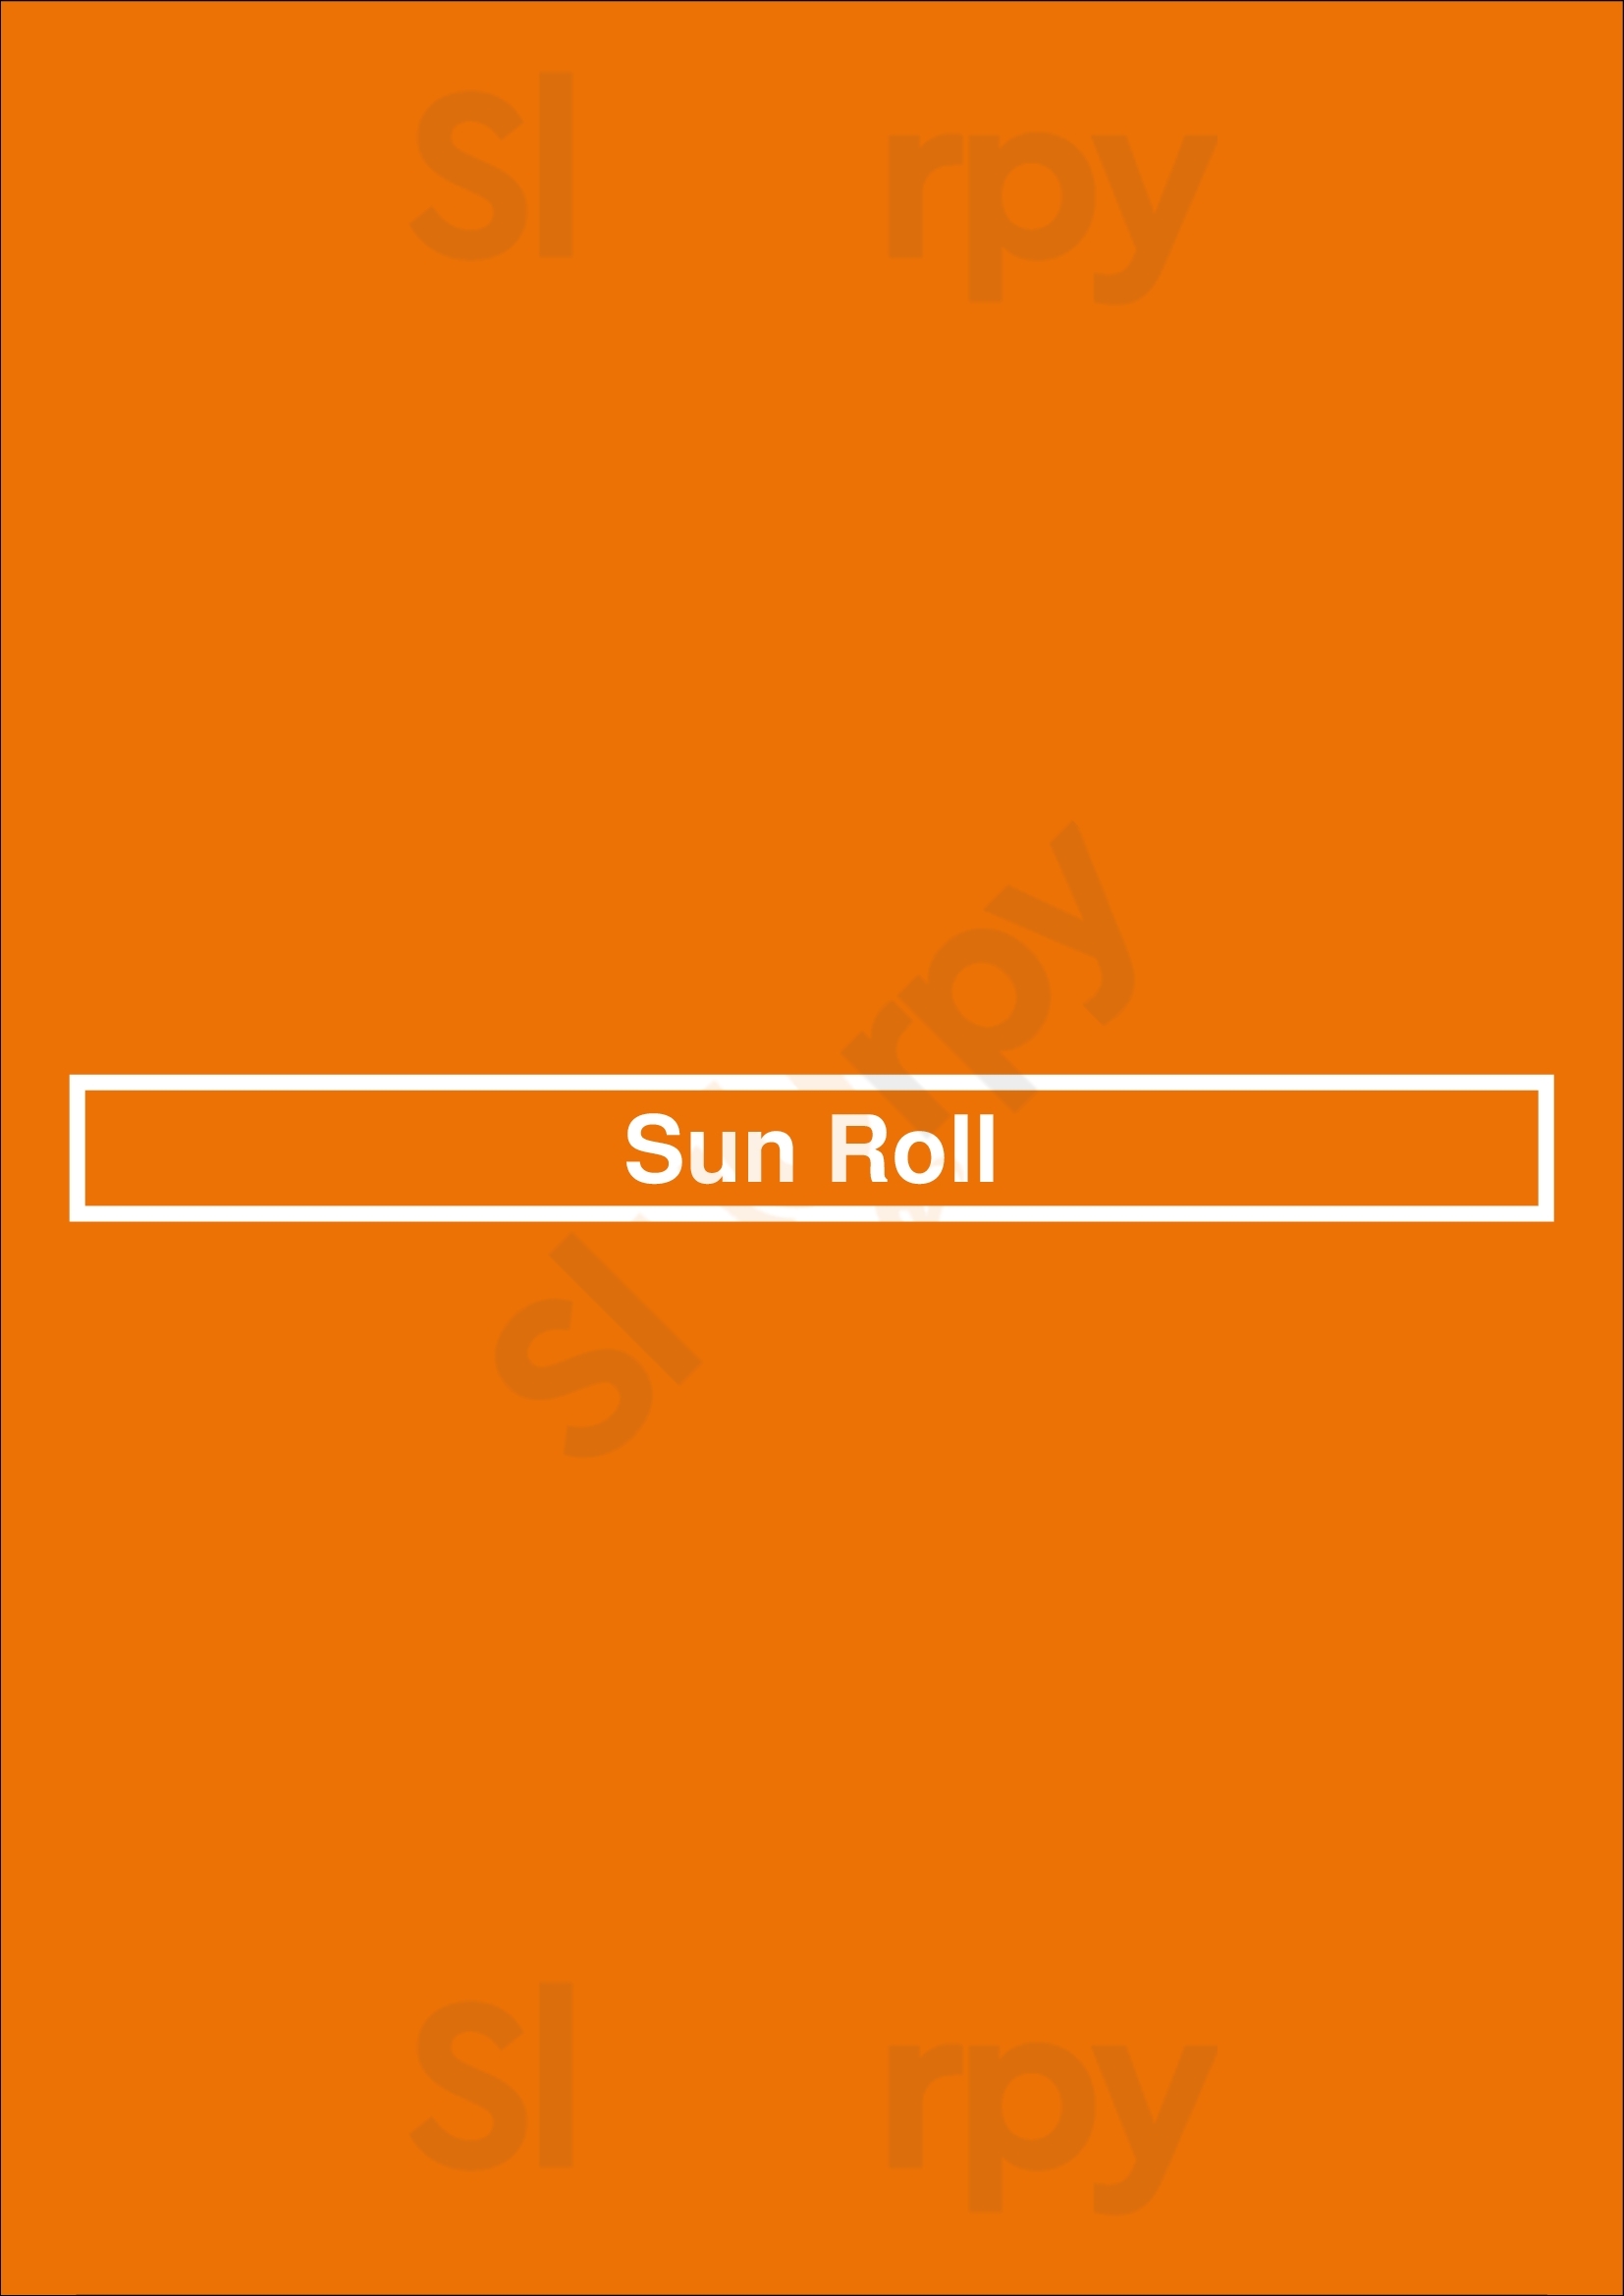 Sun Roll Buffalo Menu - 1